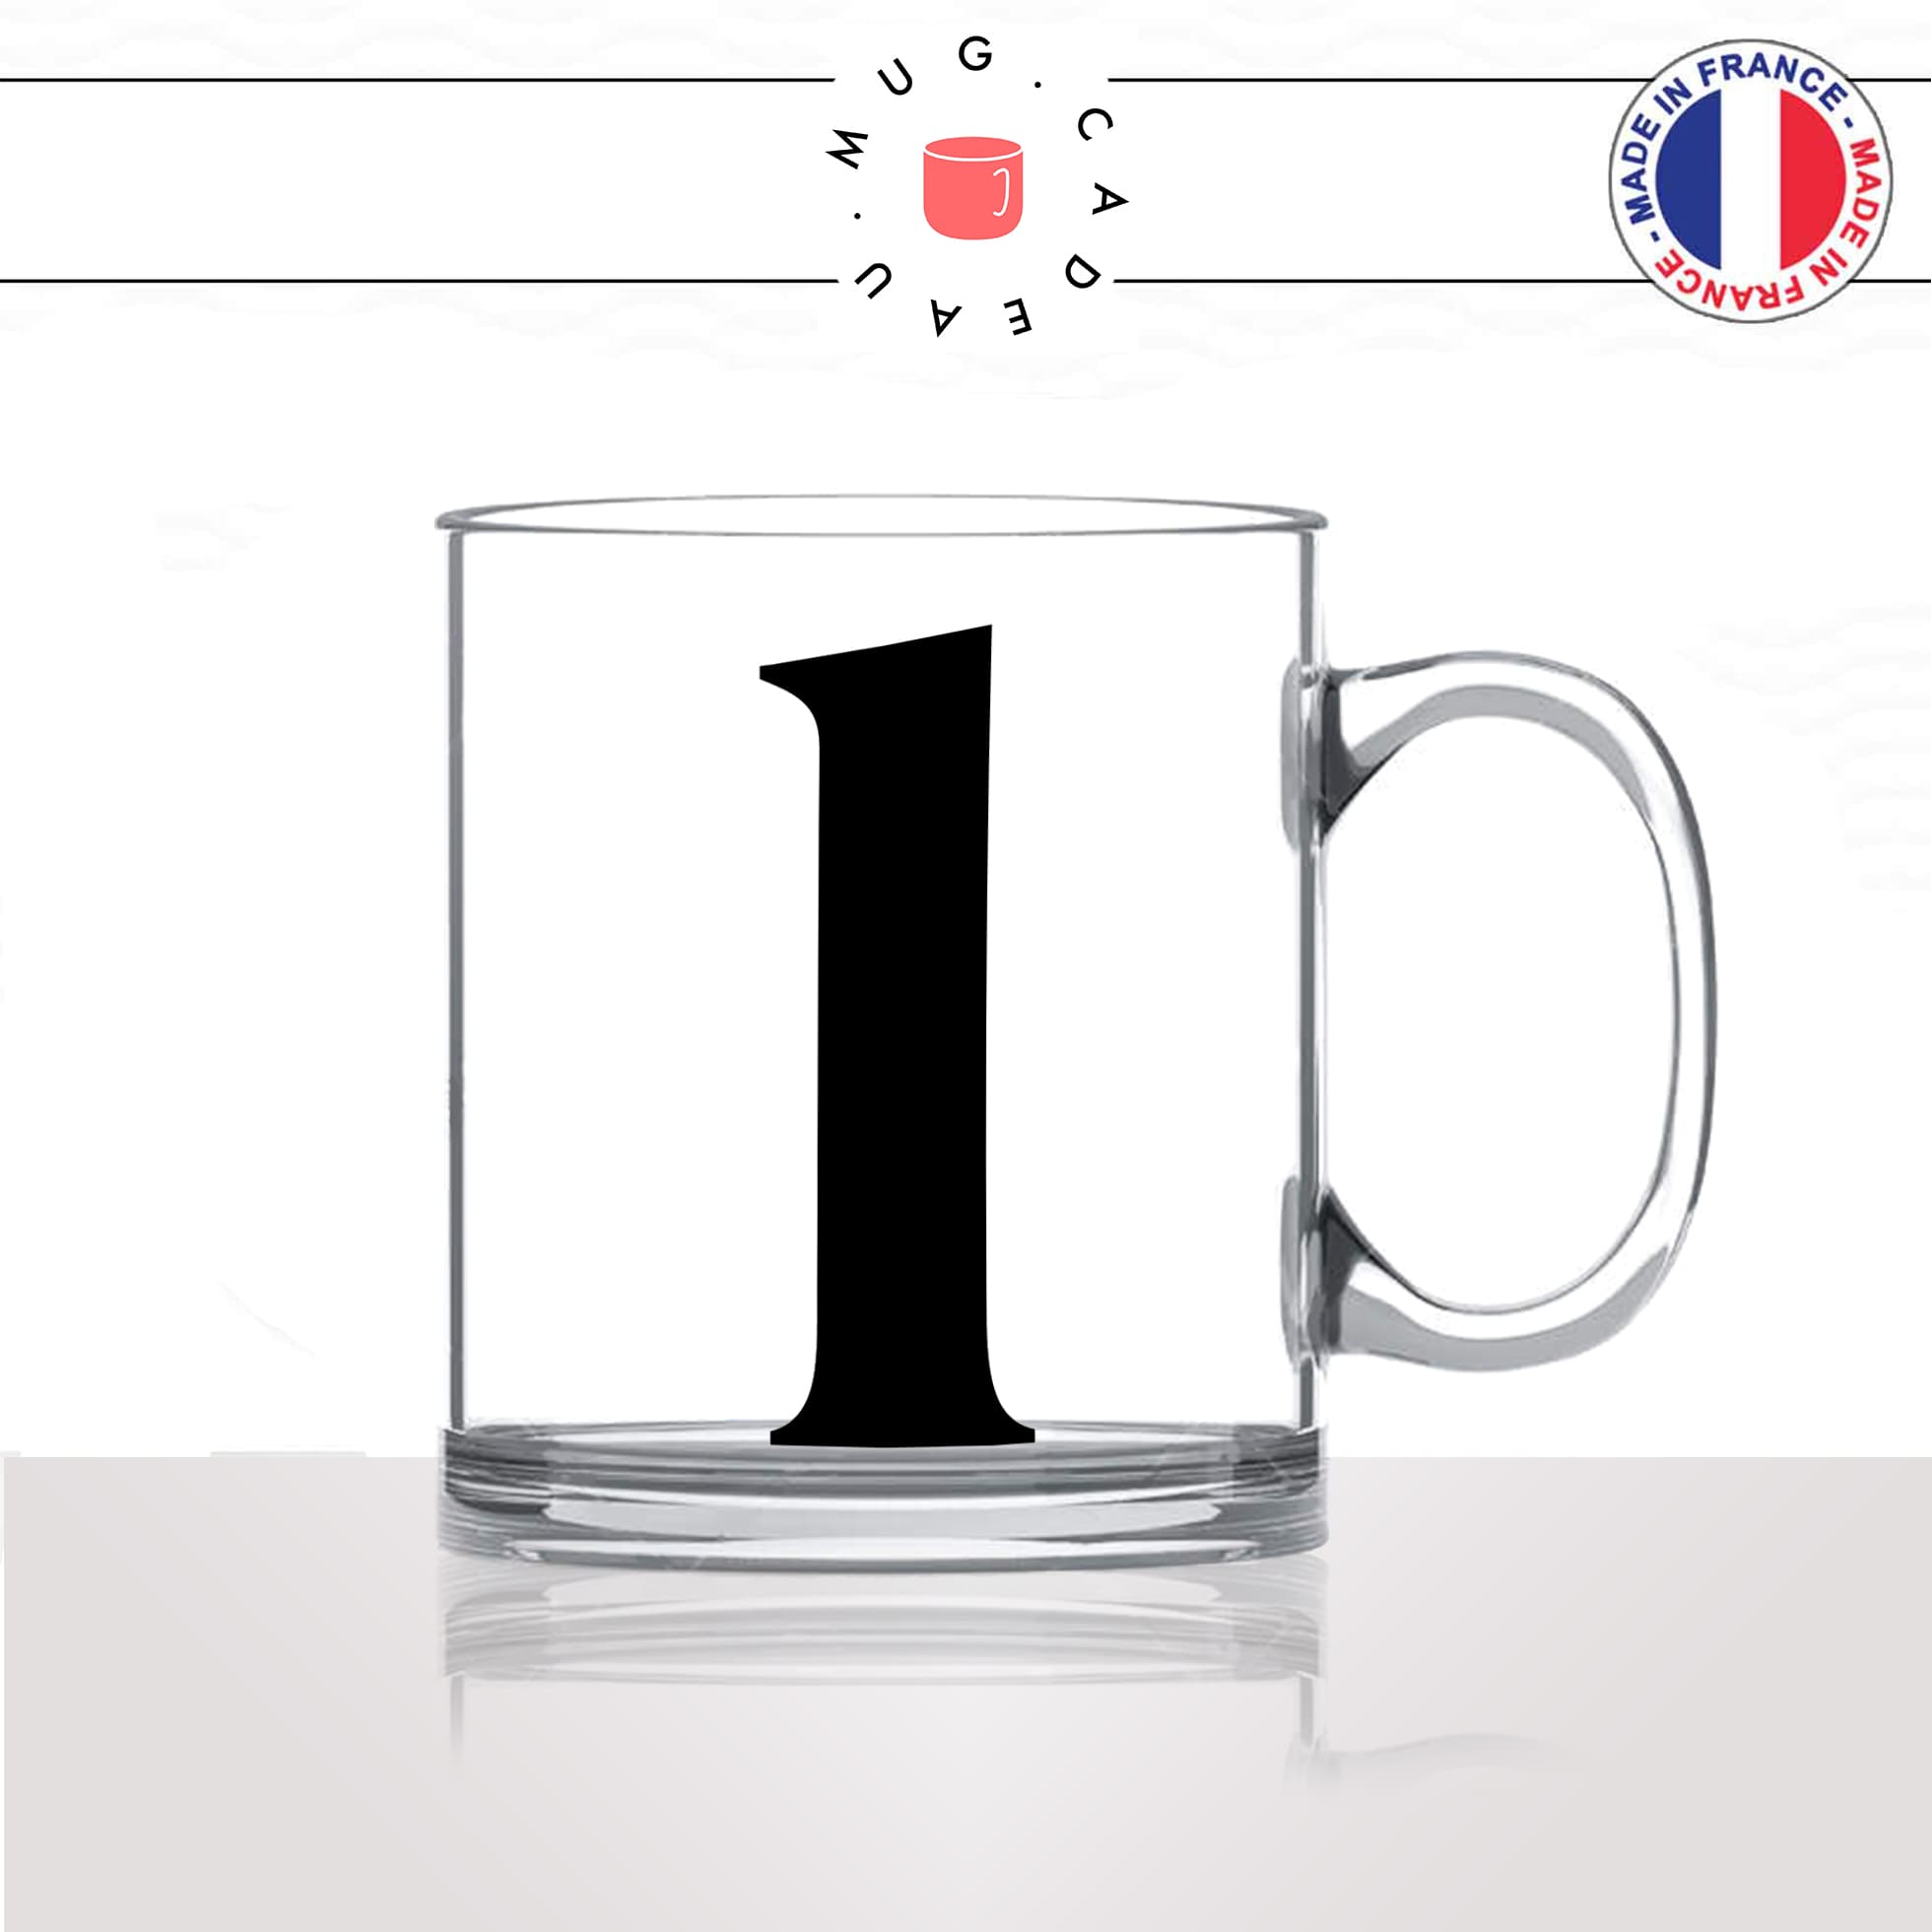 mug-tasse-en-verre-transparent-glass-initiale-L-léa-laurie-laurence-liliane-laura-prenom-lettre-collegue-original-idée-cadeau-fun-cool-café-thé2